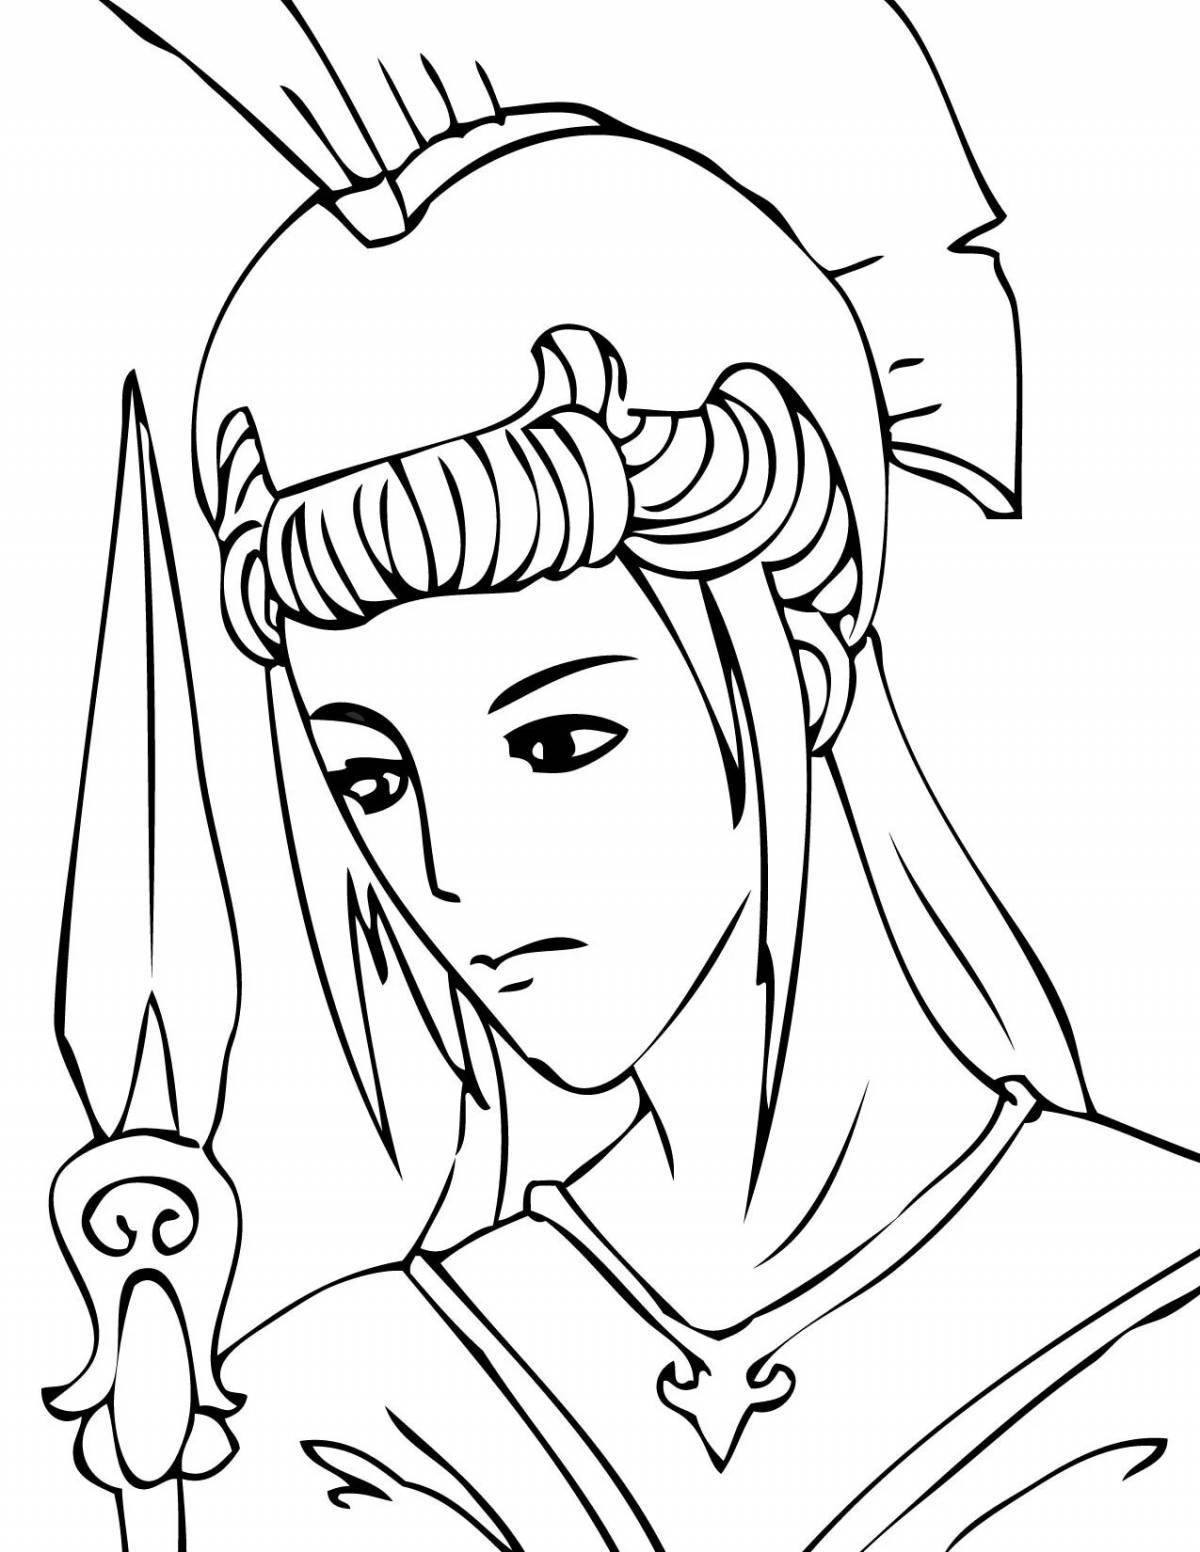 Adorable goddess athena coloring page